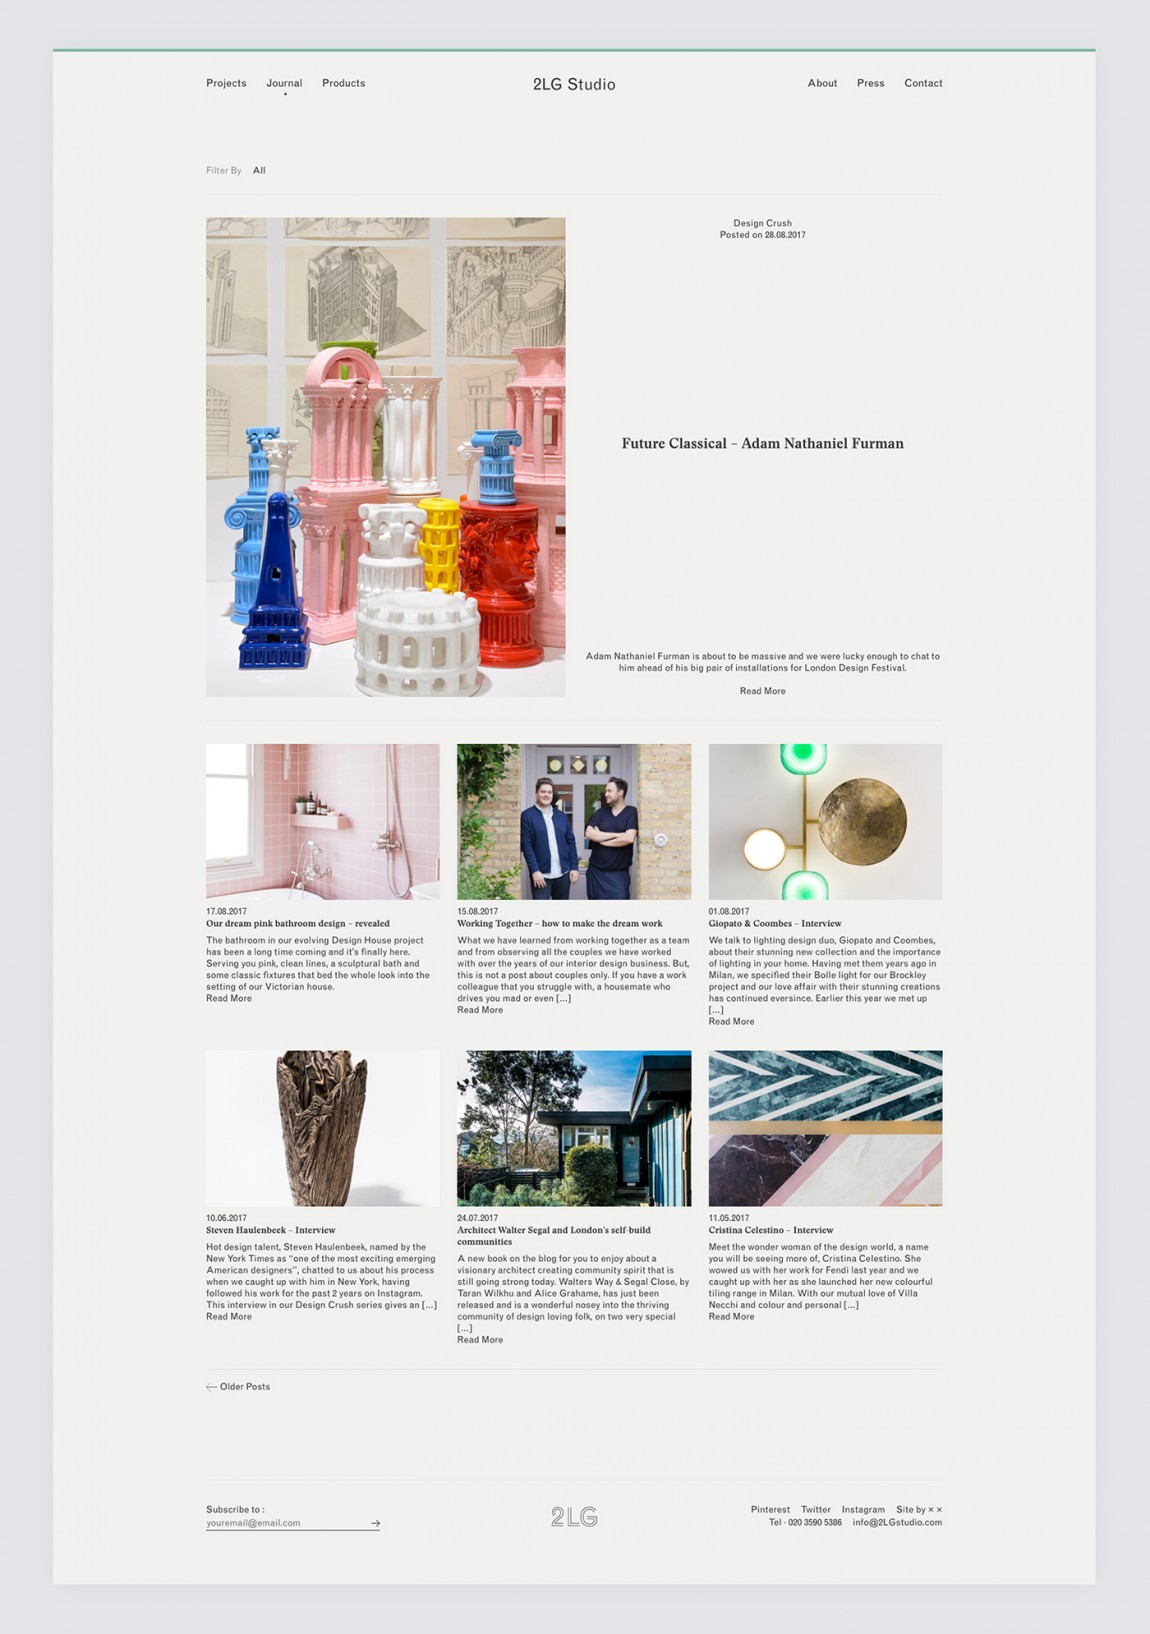 Website by Two Times Elliott for London-based interior design studio 2LG